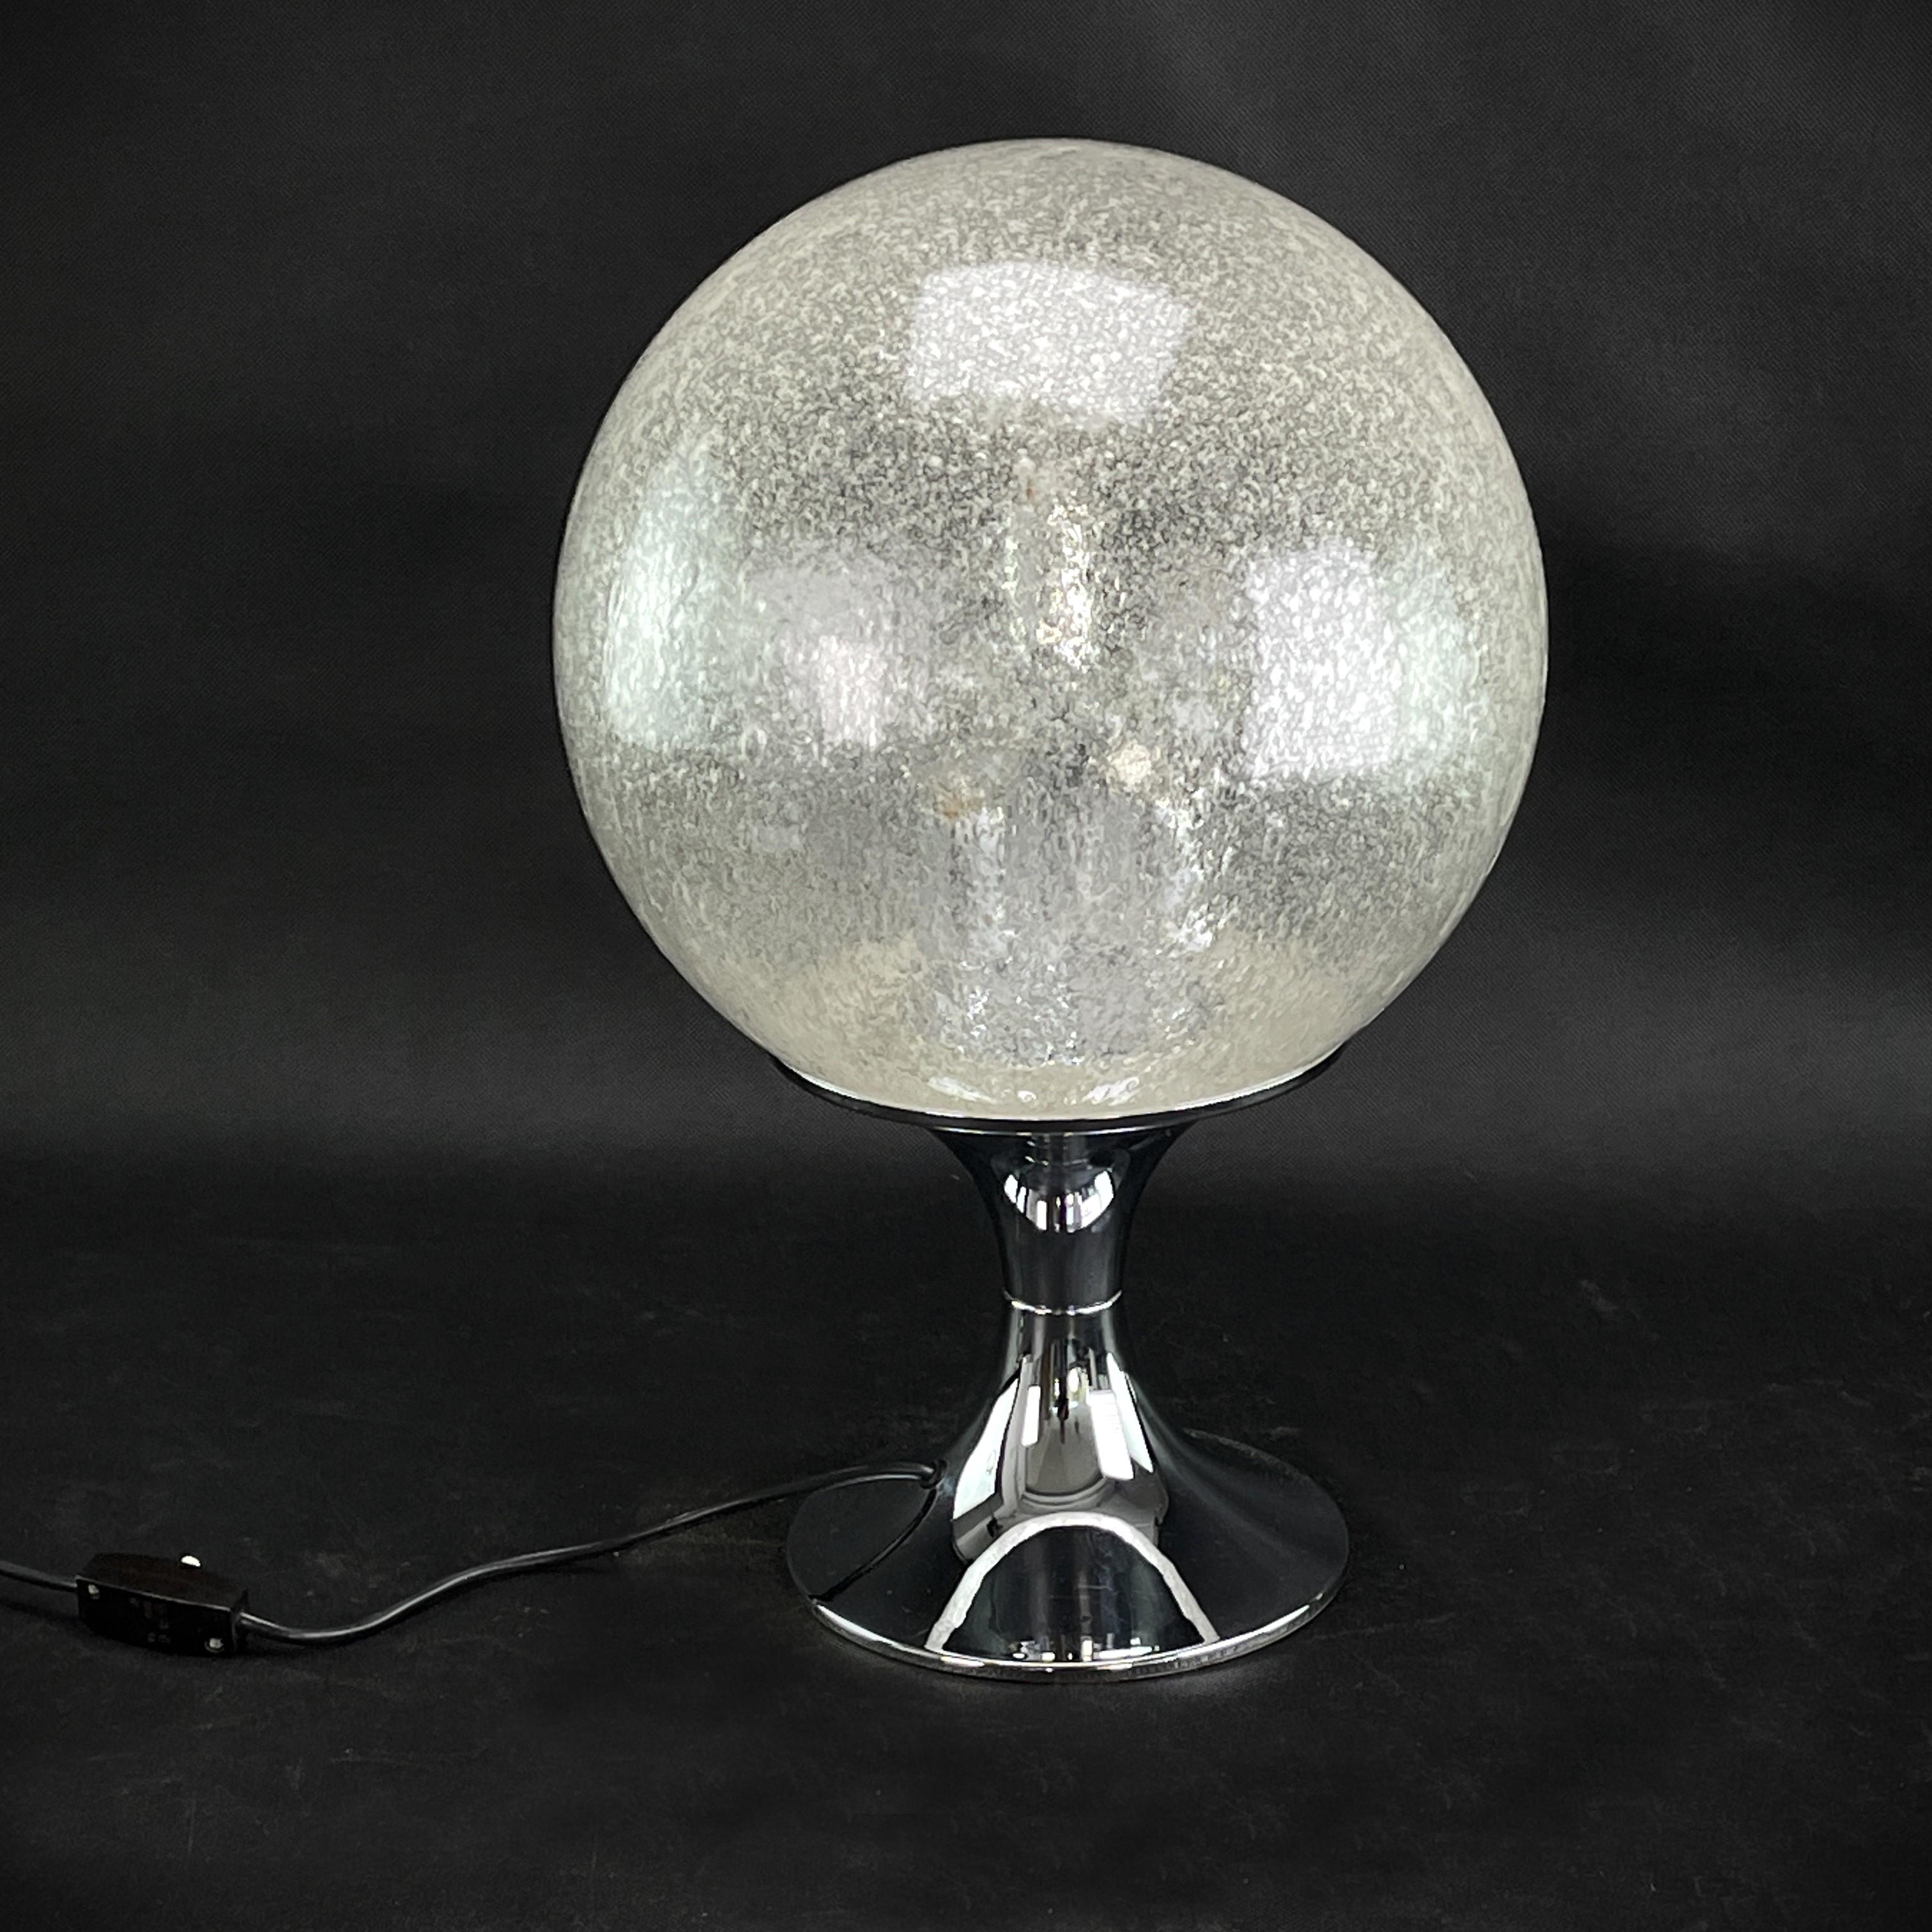 lampe de table avec grosse boule de verre

Cette lampe magnifique et rare est un véritable classique du design des années 60. Cette lampe au design extraordinaire est un point fort pour tout intérieur de salon de l'ère Panton-Eames. Cette lampe